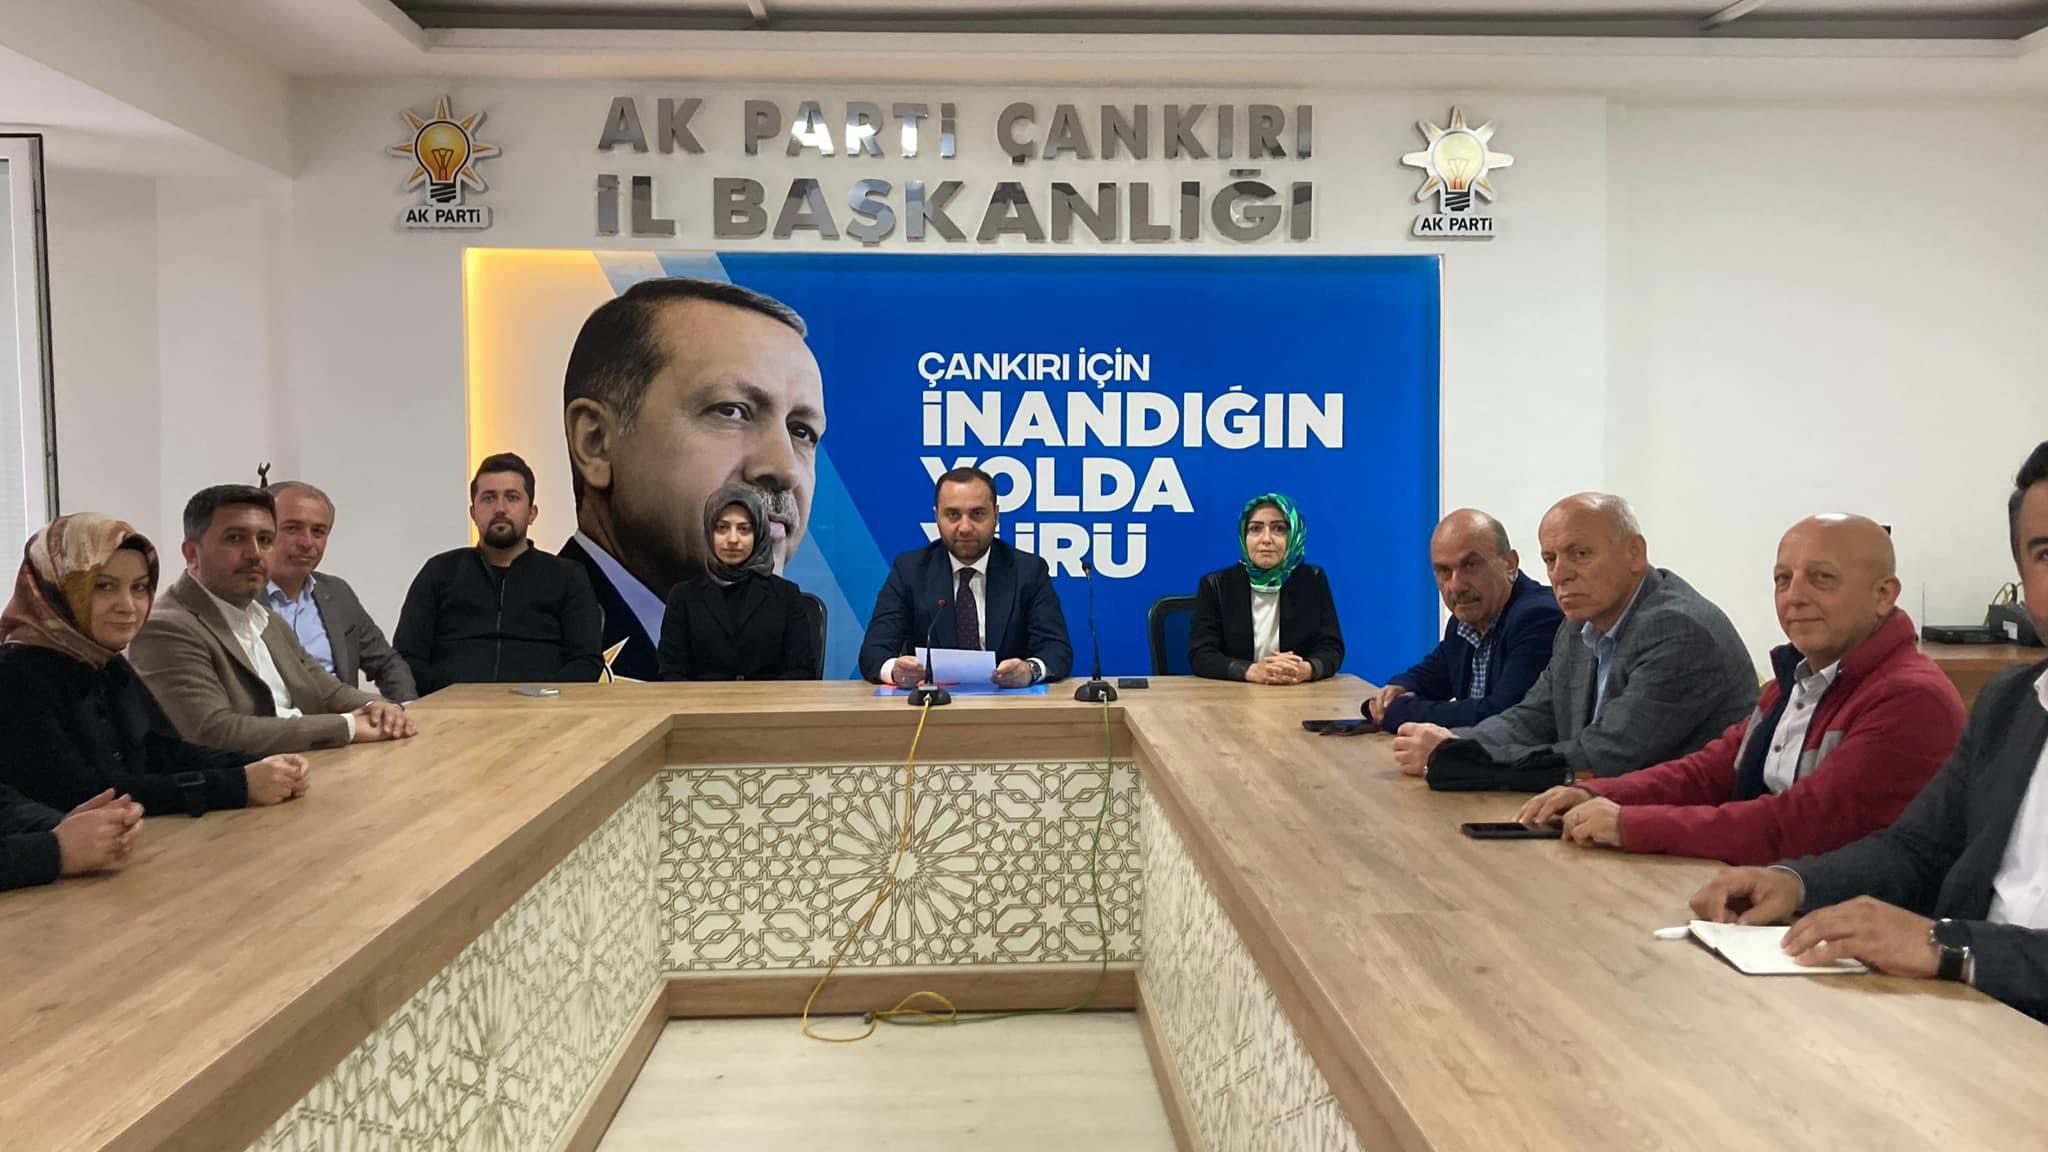 AK Parti Çankırı İl Başkanlığından 27 Mayıs darbesi açıklaması